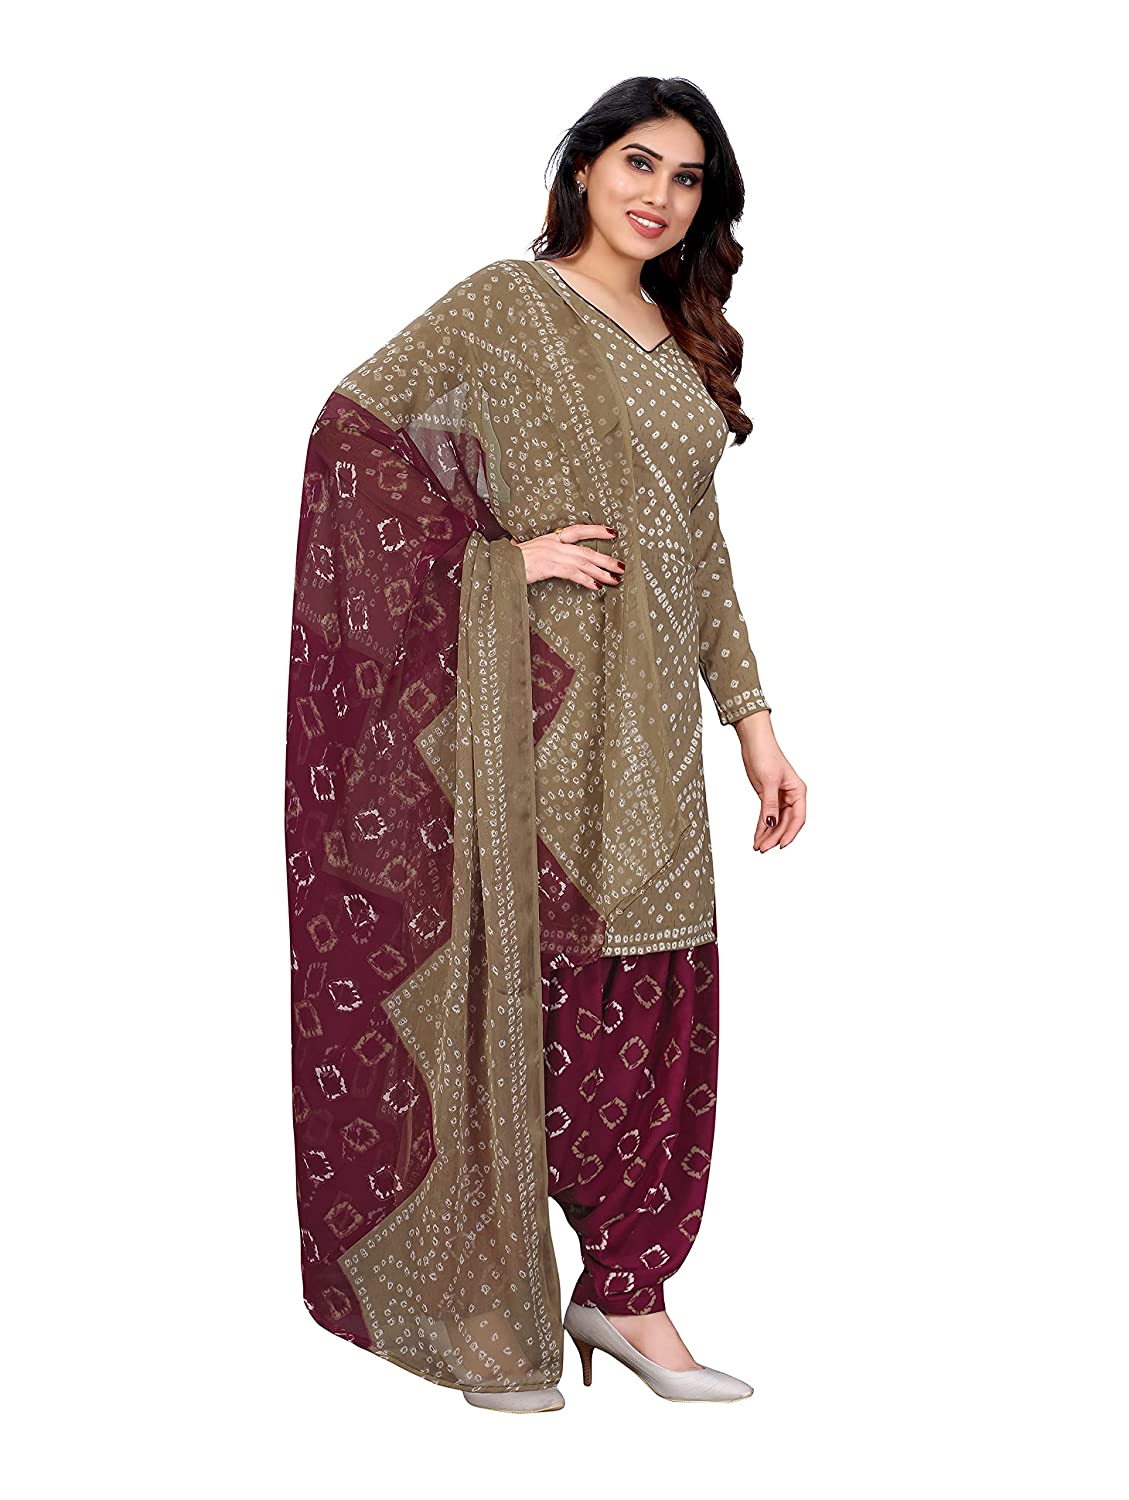 Patiyala Punjabi Suit Designer Maroon Punjabi Suit For Women | Etsy | Patiyala  dress, Indian fashion, Special dresses